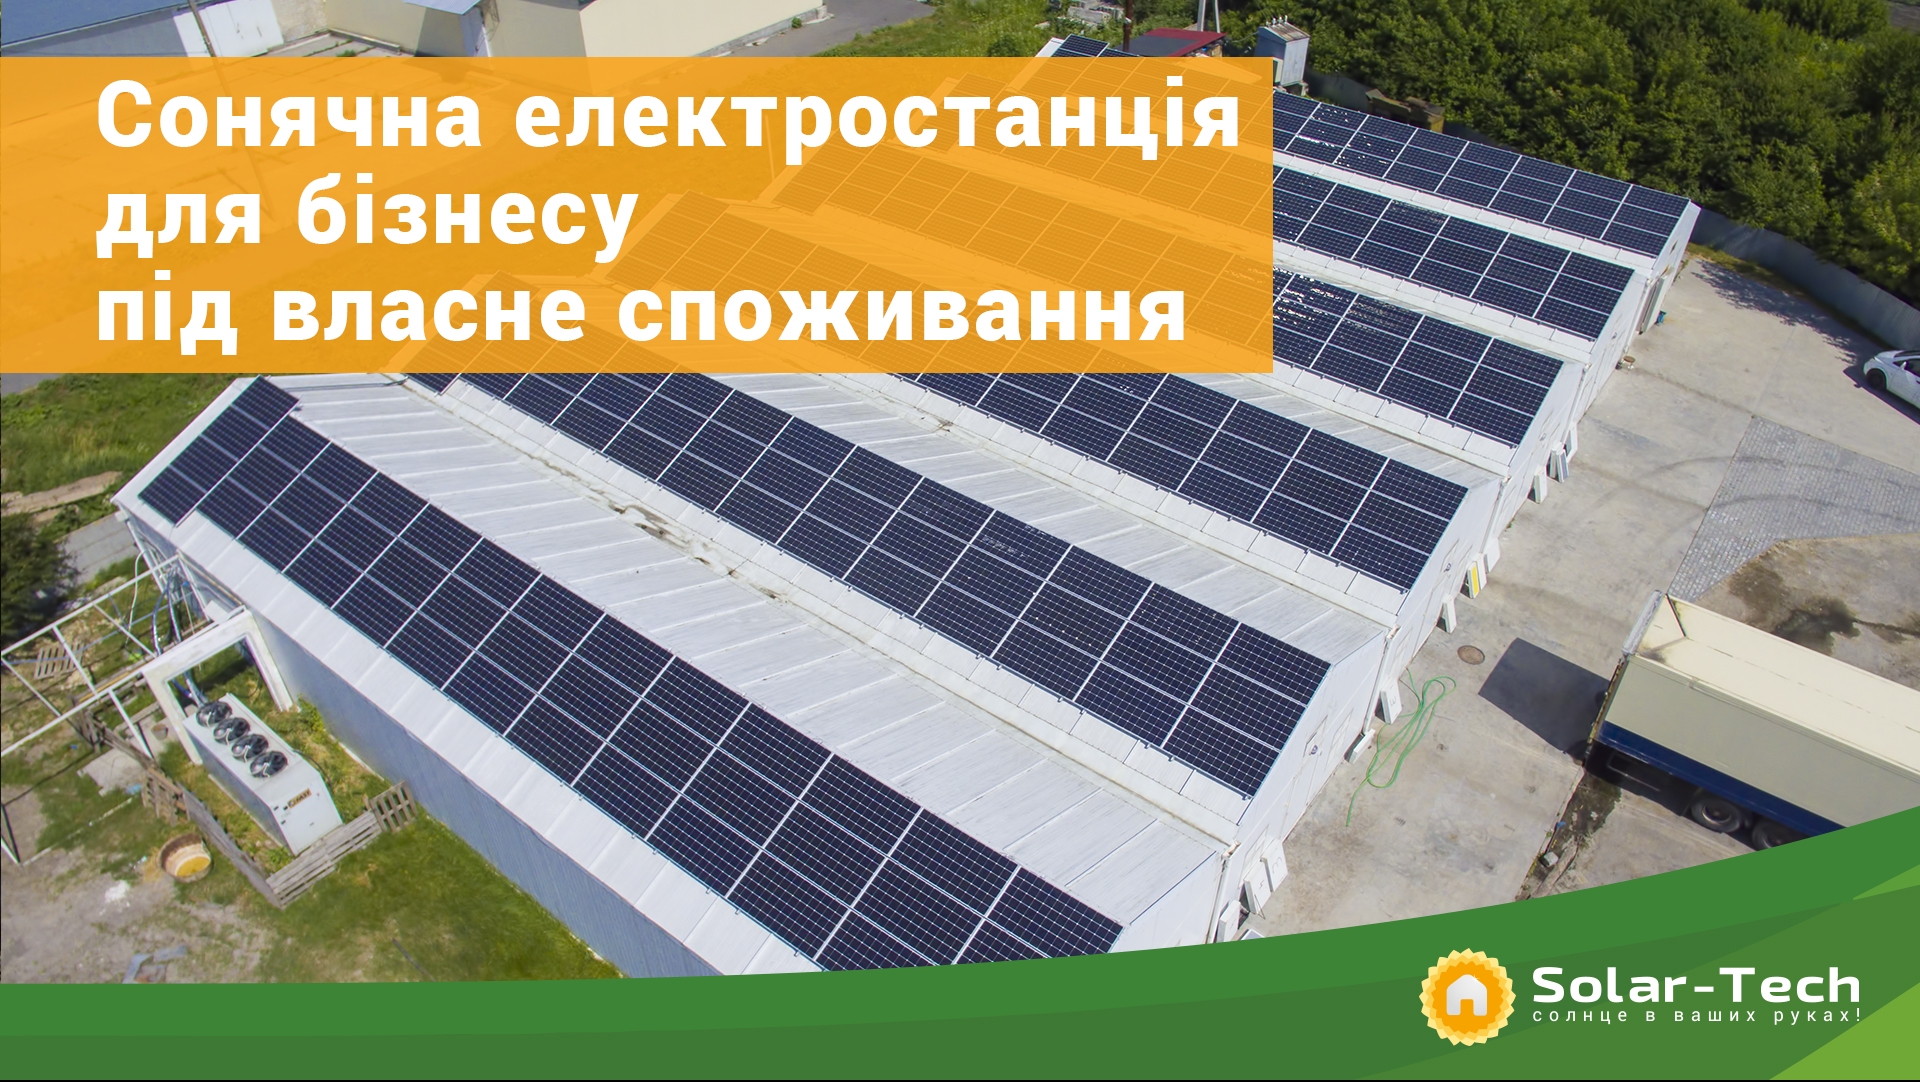 Мережеві сонячні електростанції для бізнесу під власне споживання